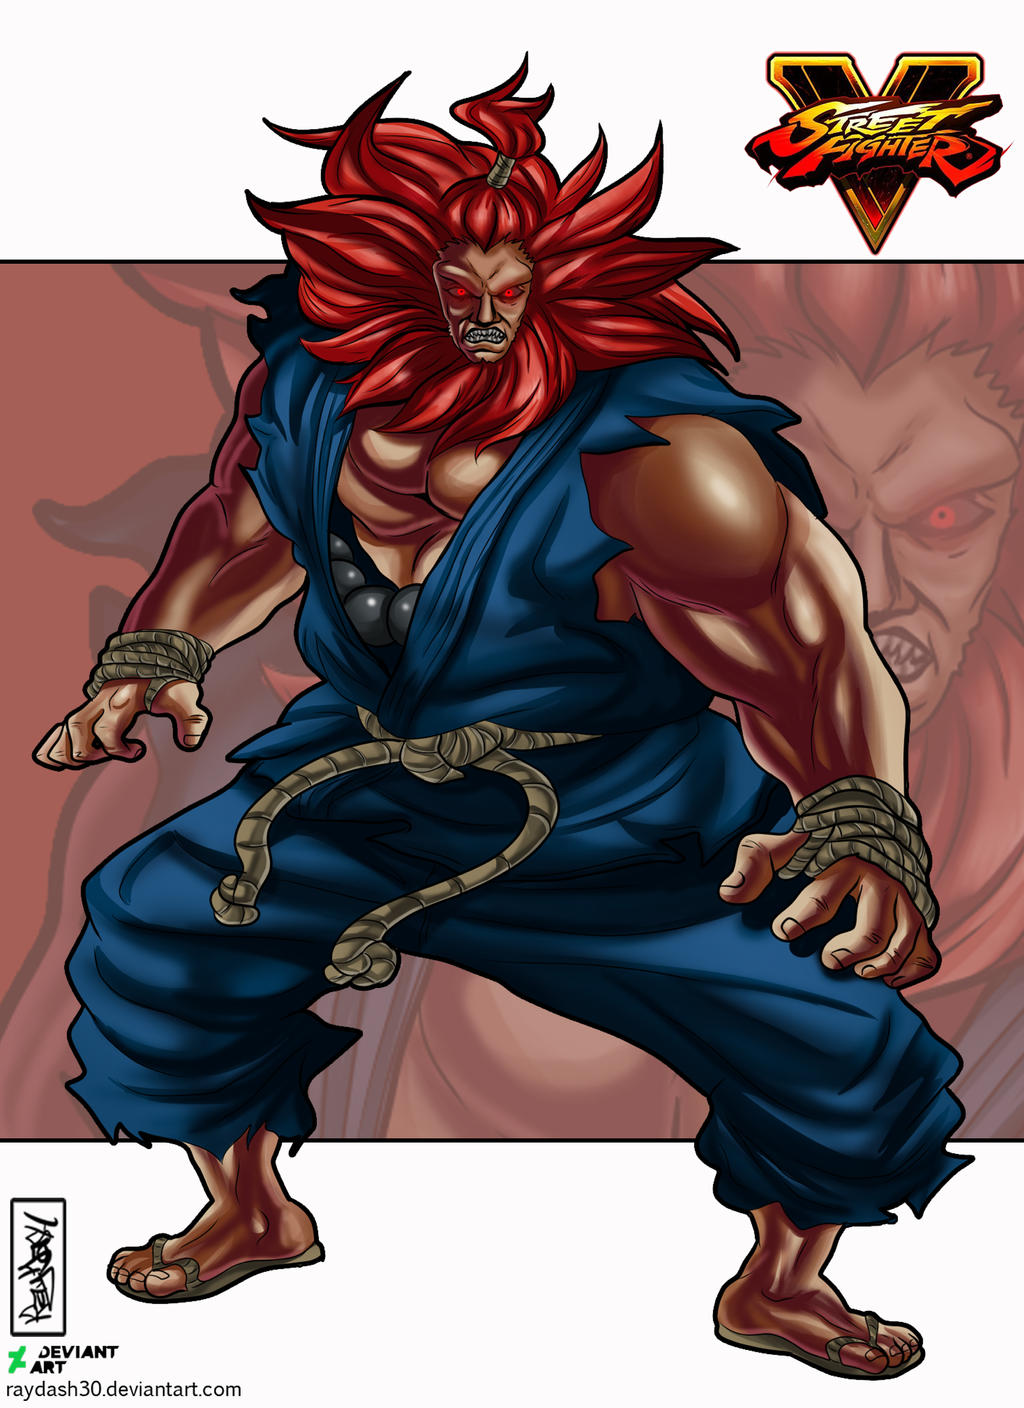 Akuma Street Fighter by Decomicsart on DeviantArt